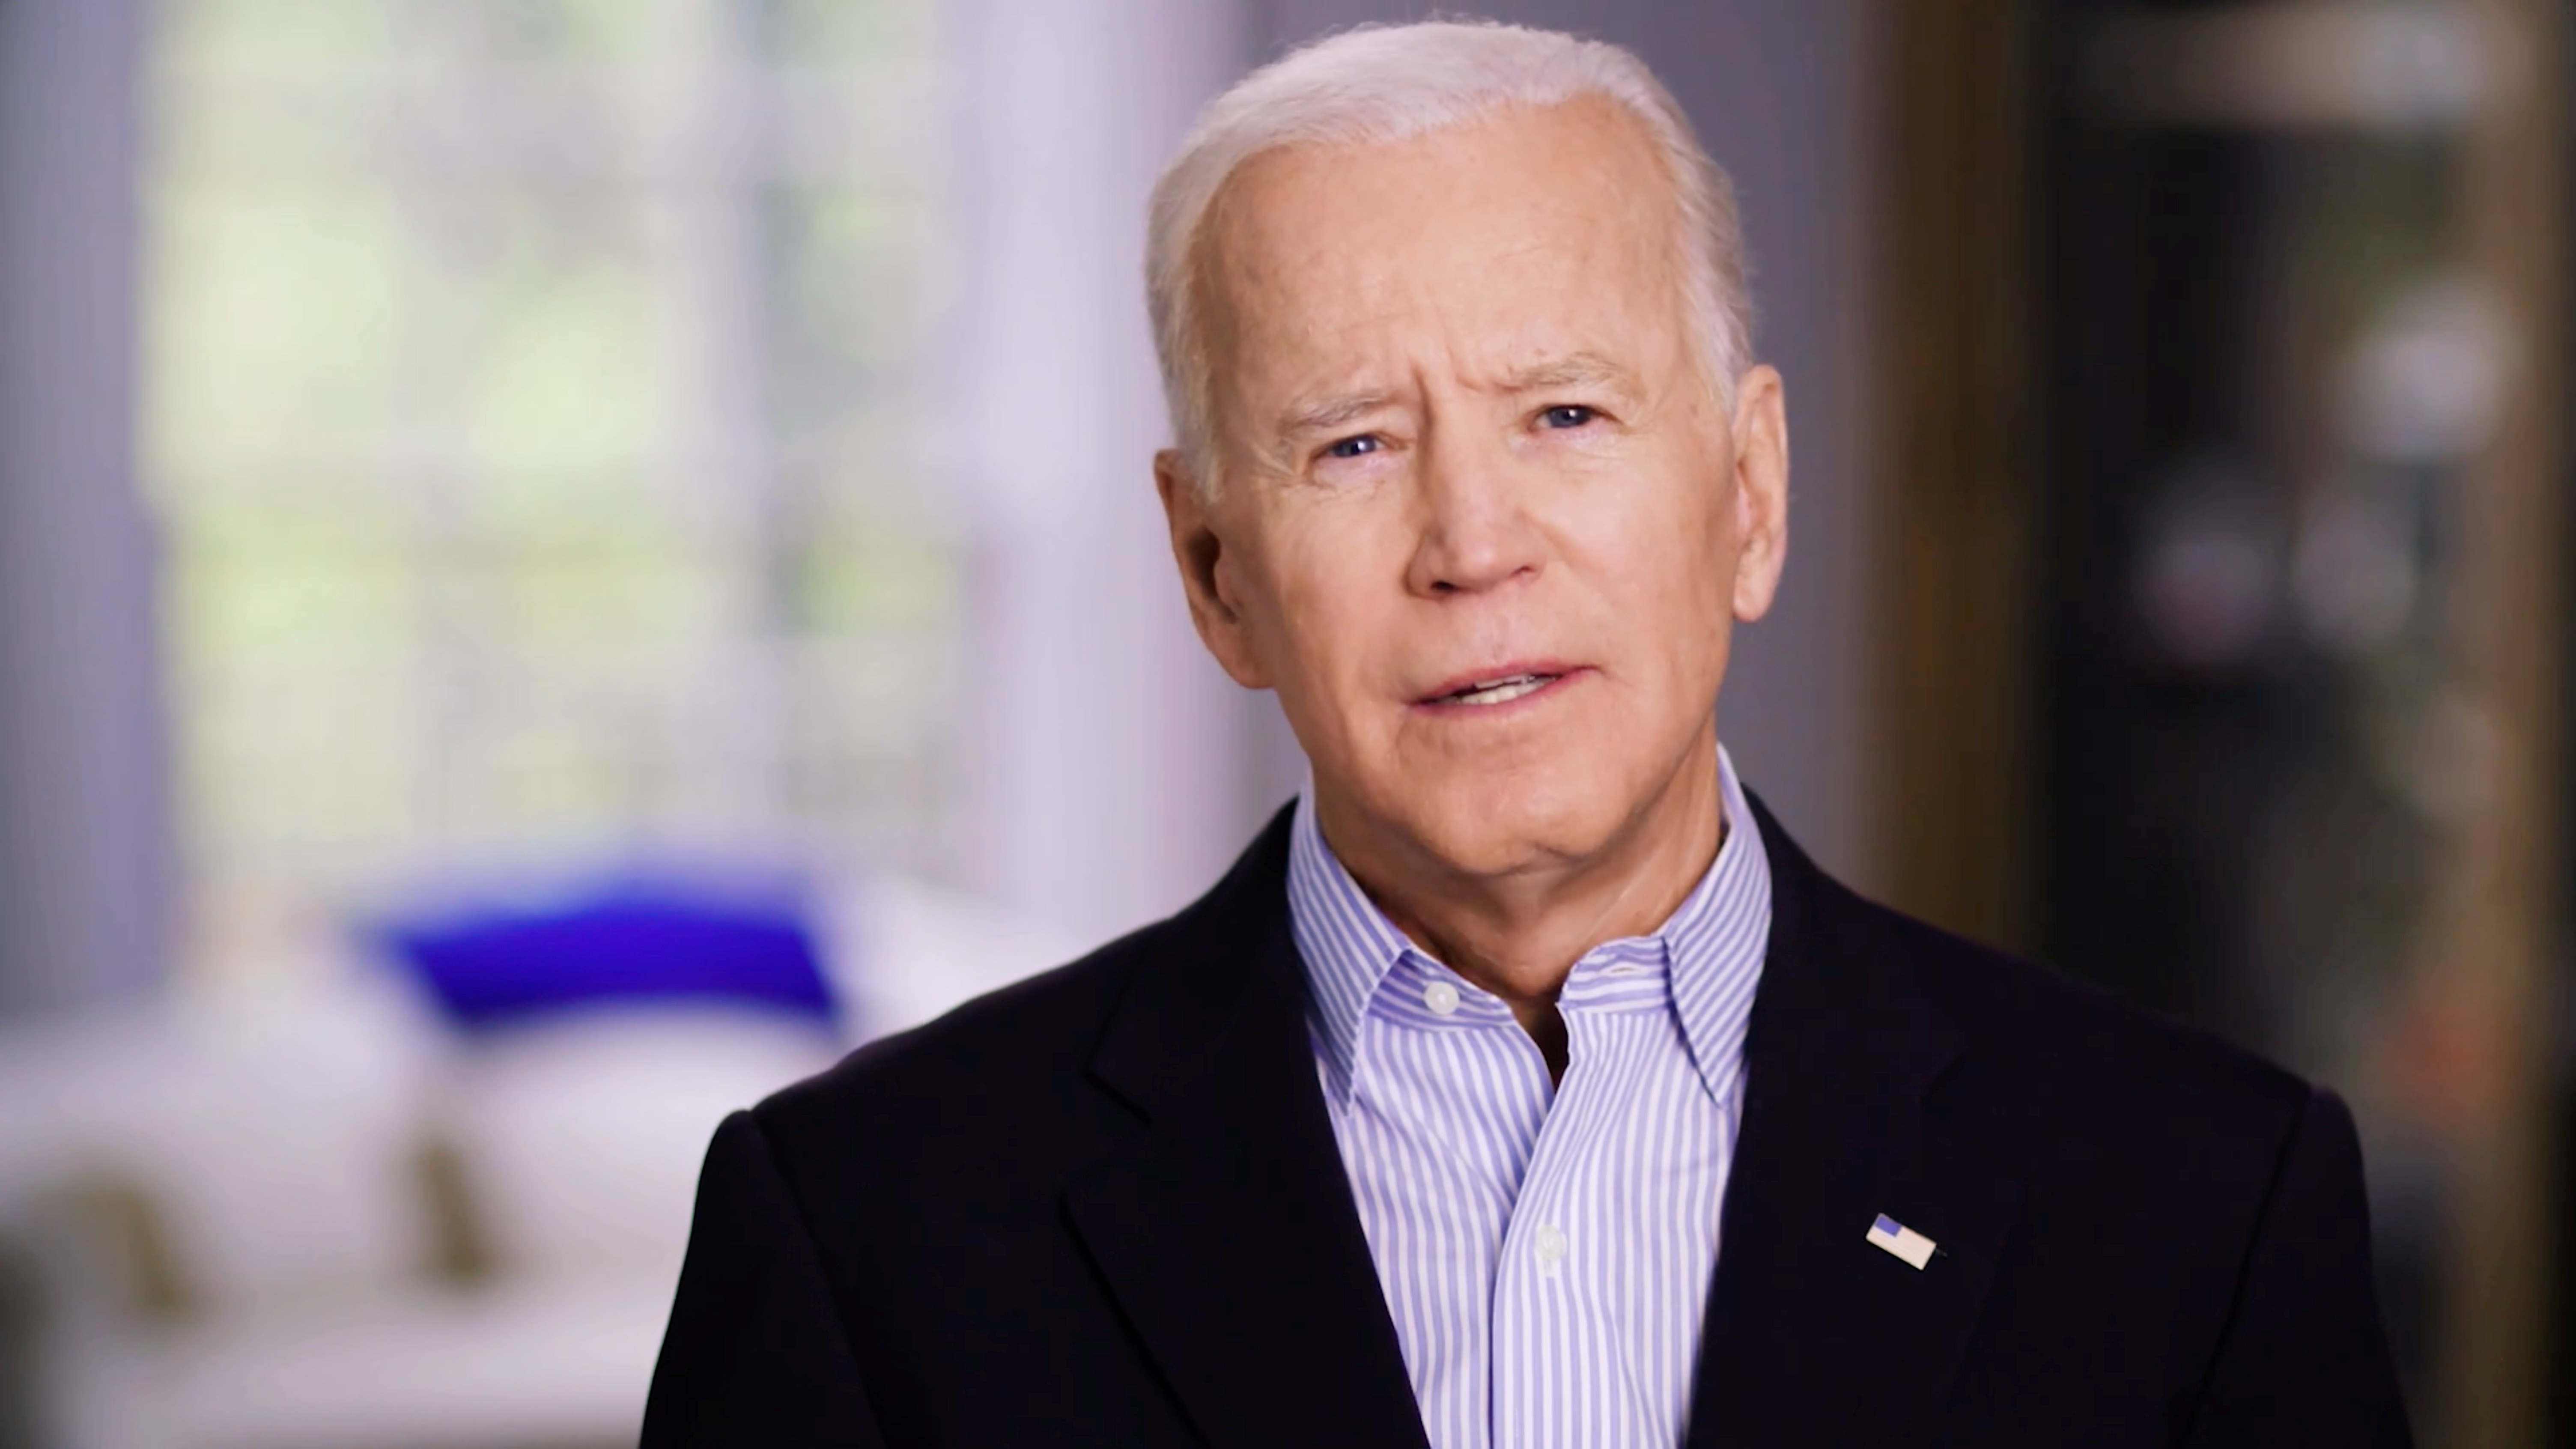 Biden promete poner fin a una era “de oscuridad”